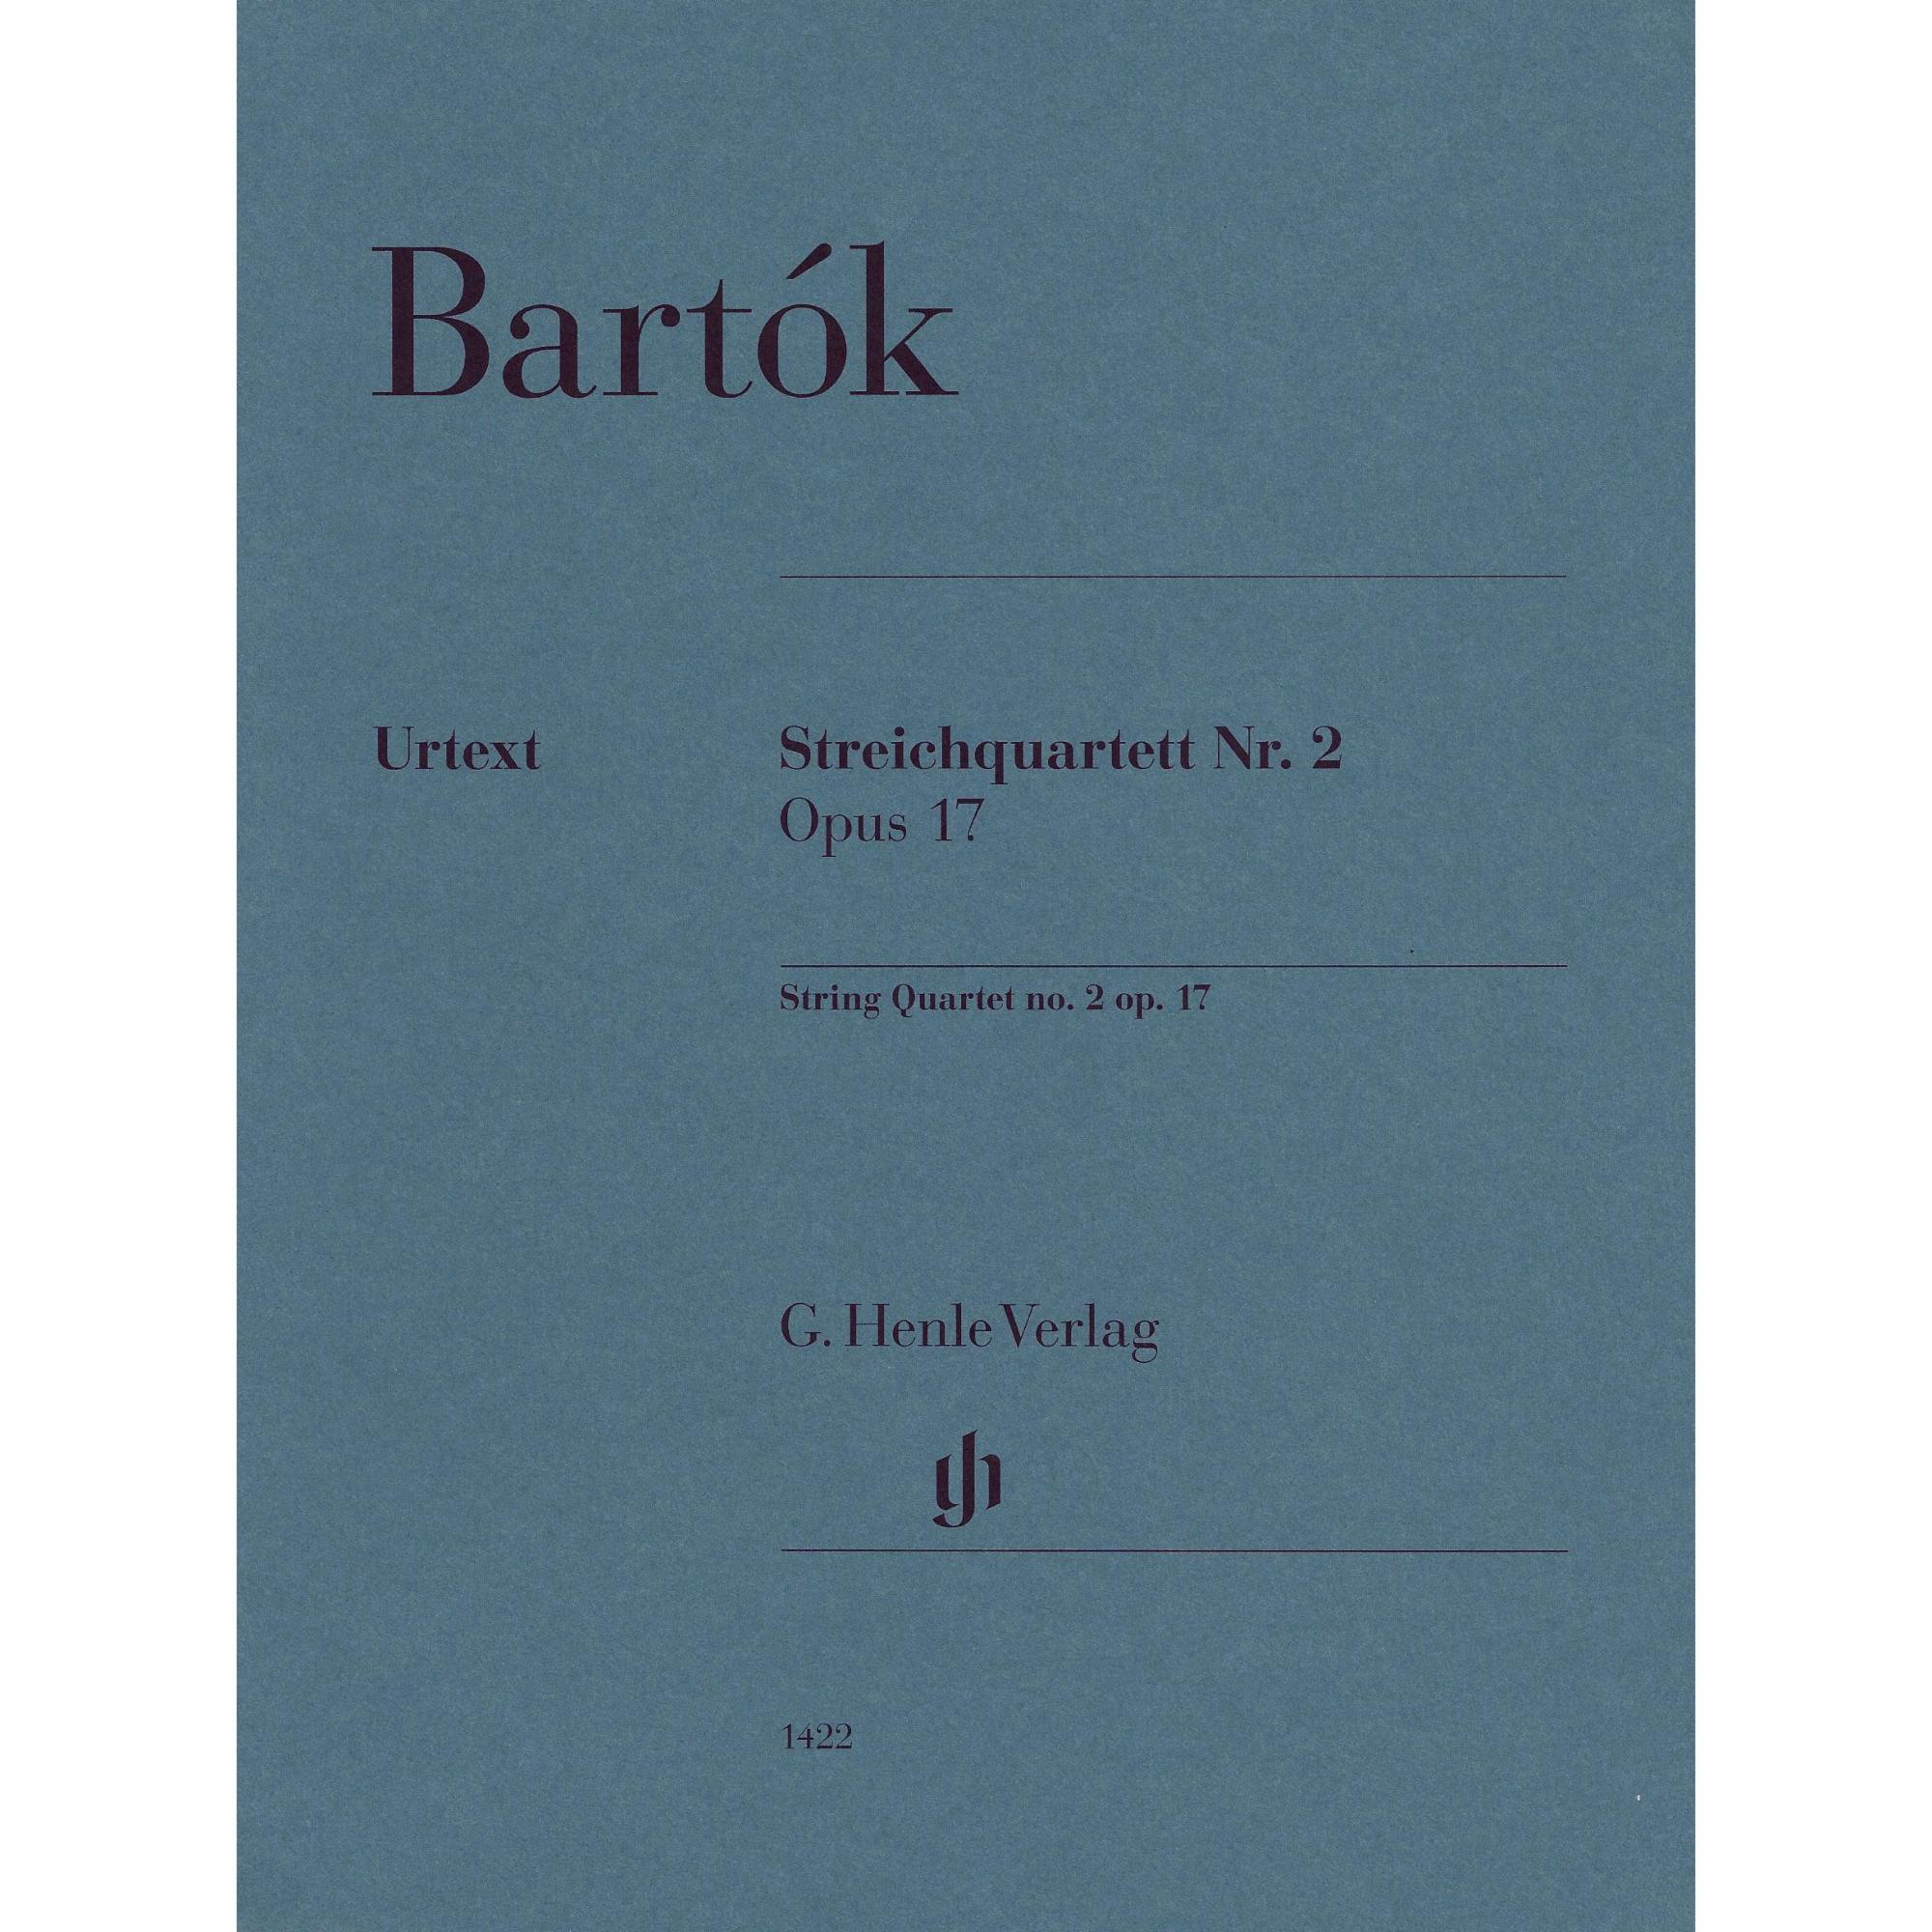 Bartok -- String Quartet No. 2, Op. 17